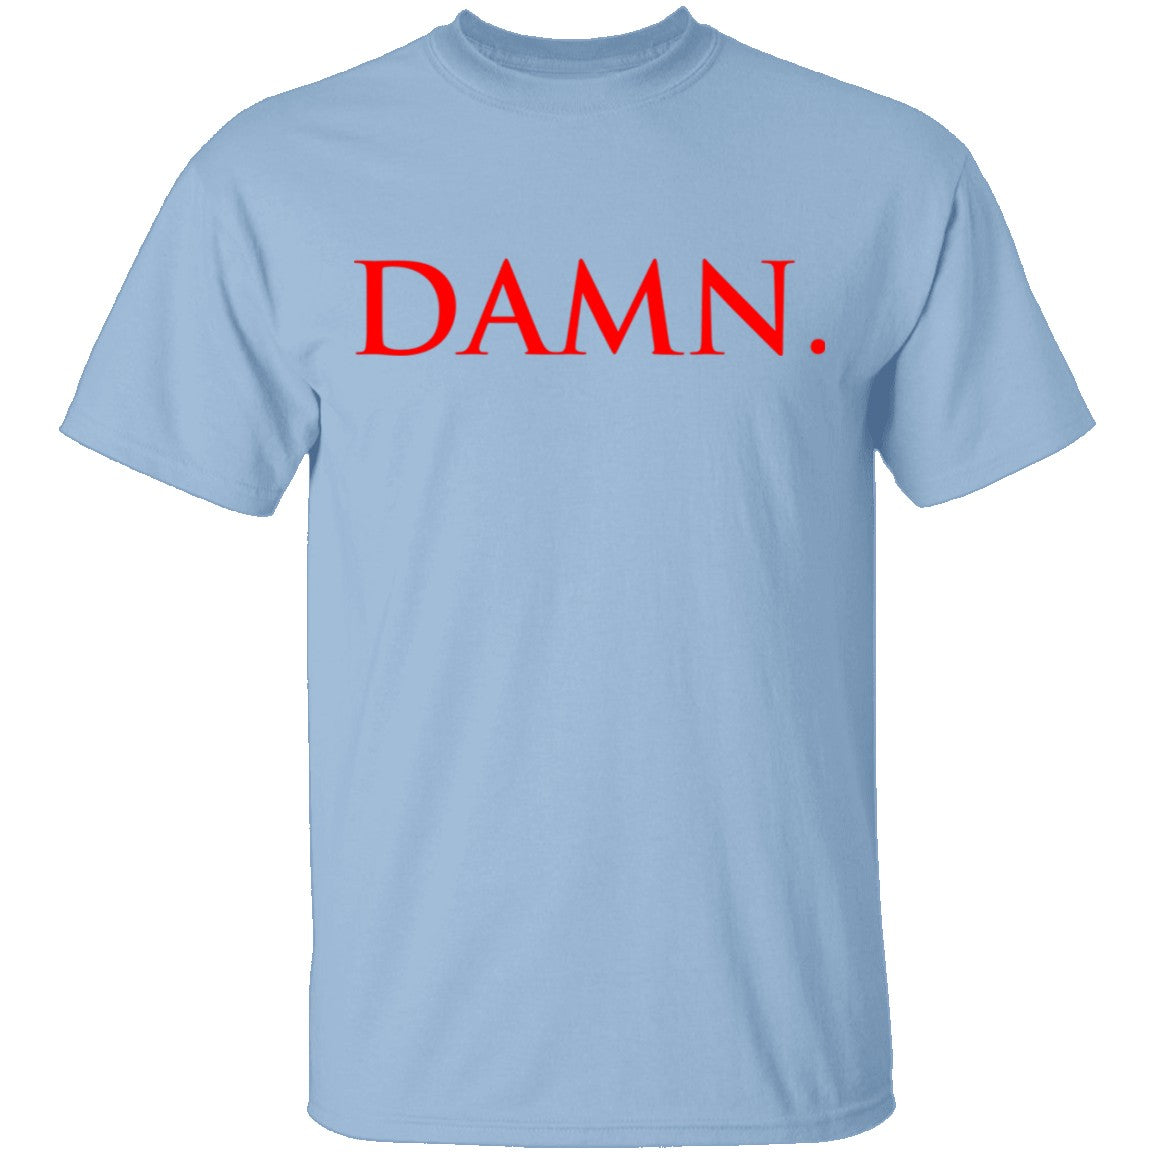 DAMN - T-Shirt | Gnarly Tees